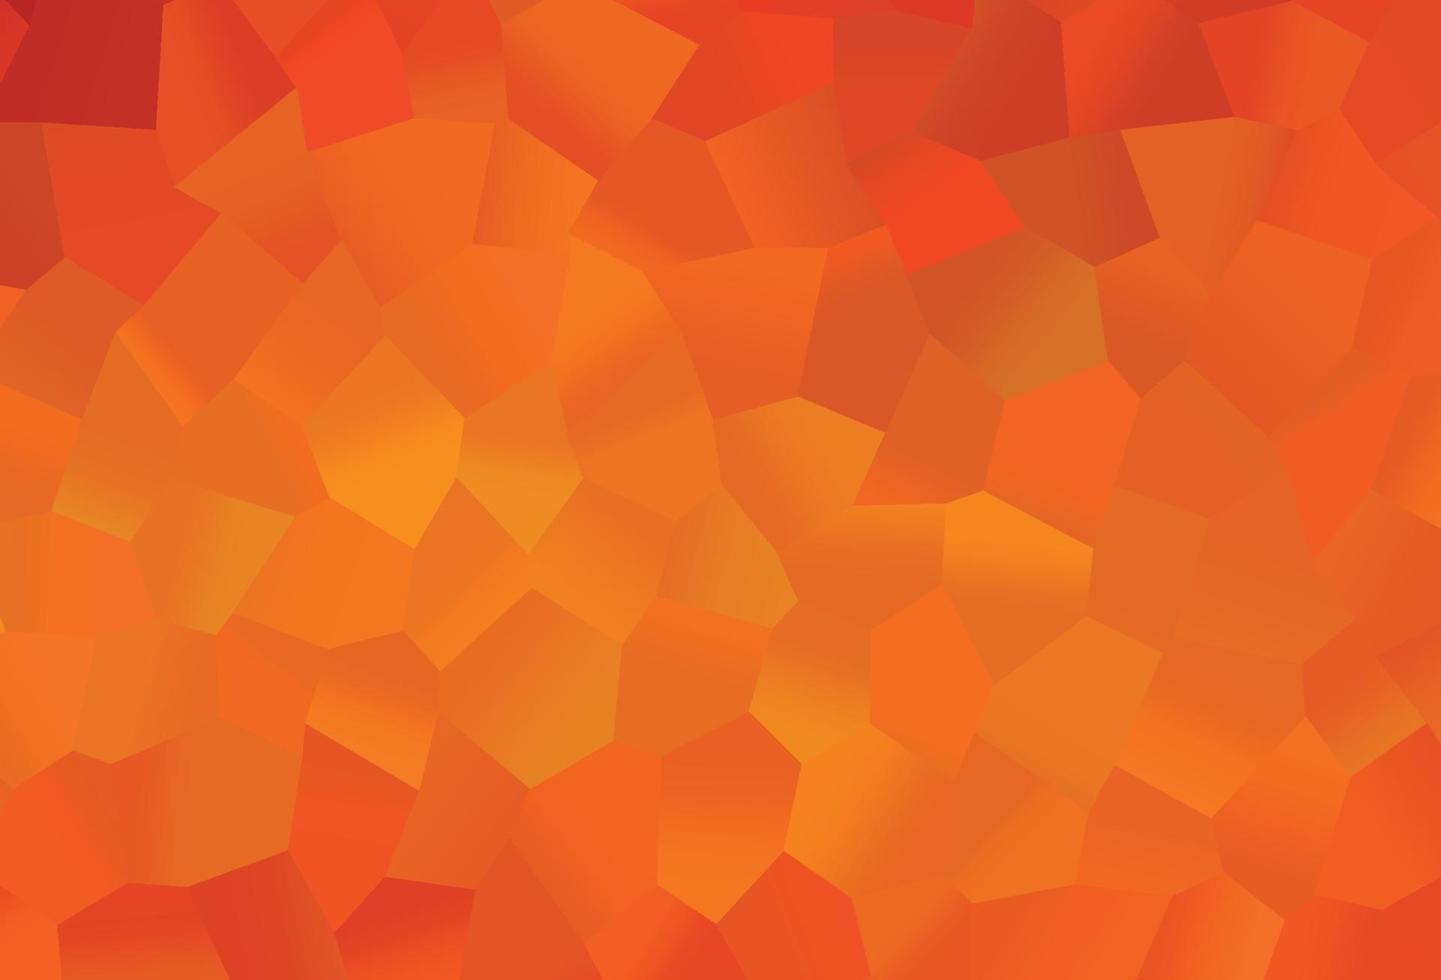 texture de vecteur orange clair avec des hexagones colorés.